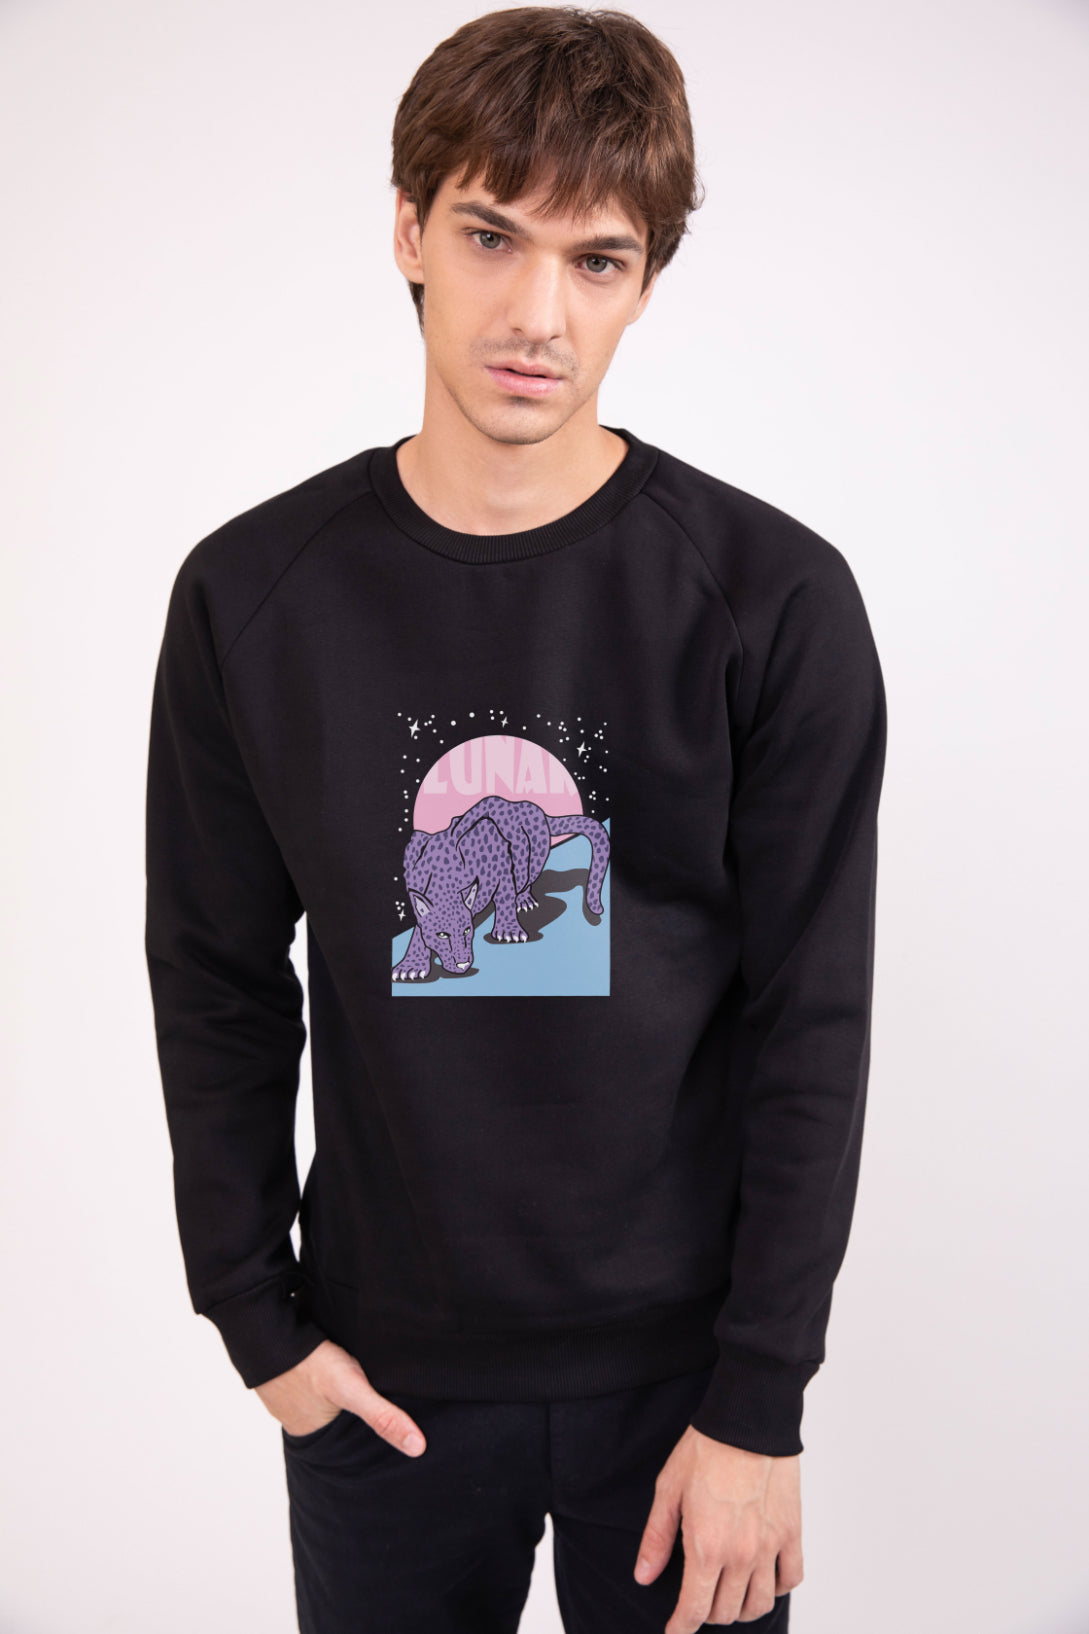 Lunar Black - Printed Sweatshirt